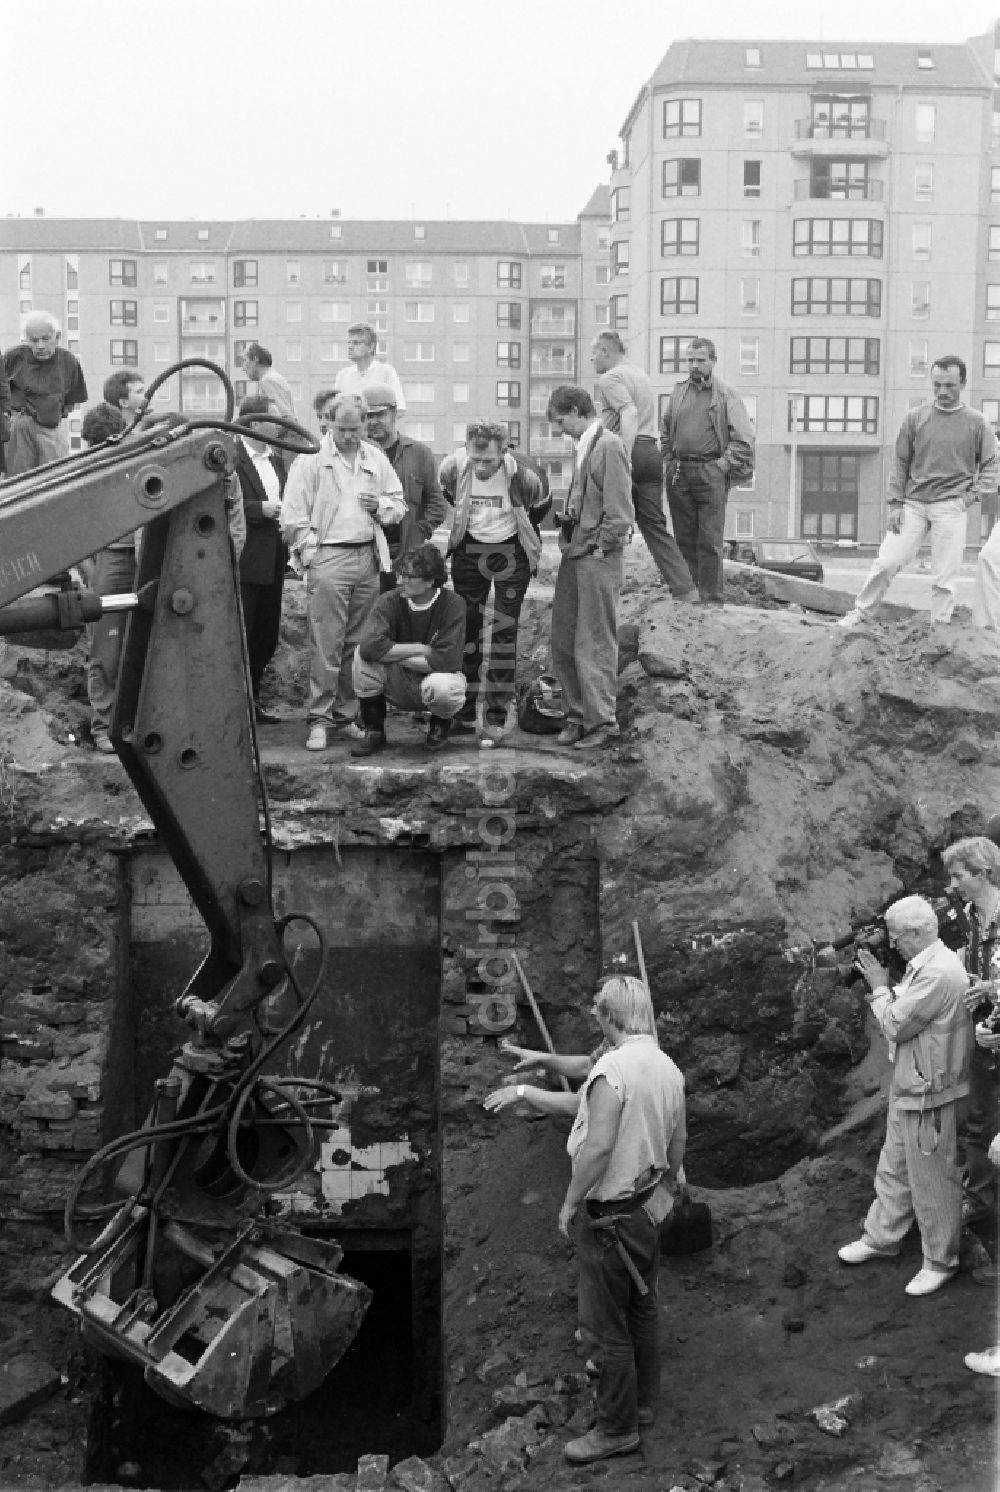 DDR-Bildarchiv: Berlin - Reste der Bunkeranlagen Führerbunker - Reichskanzlei in Berlin in der DDR